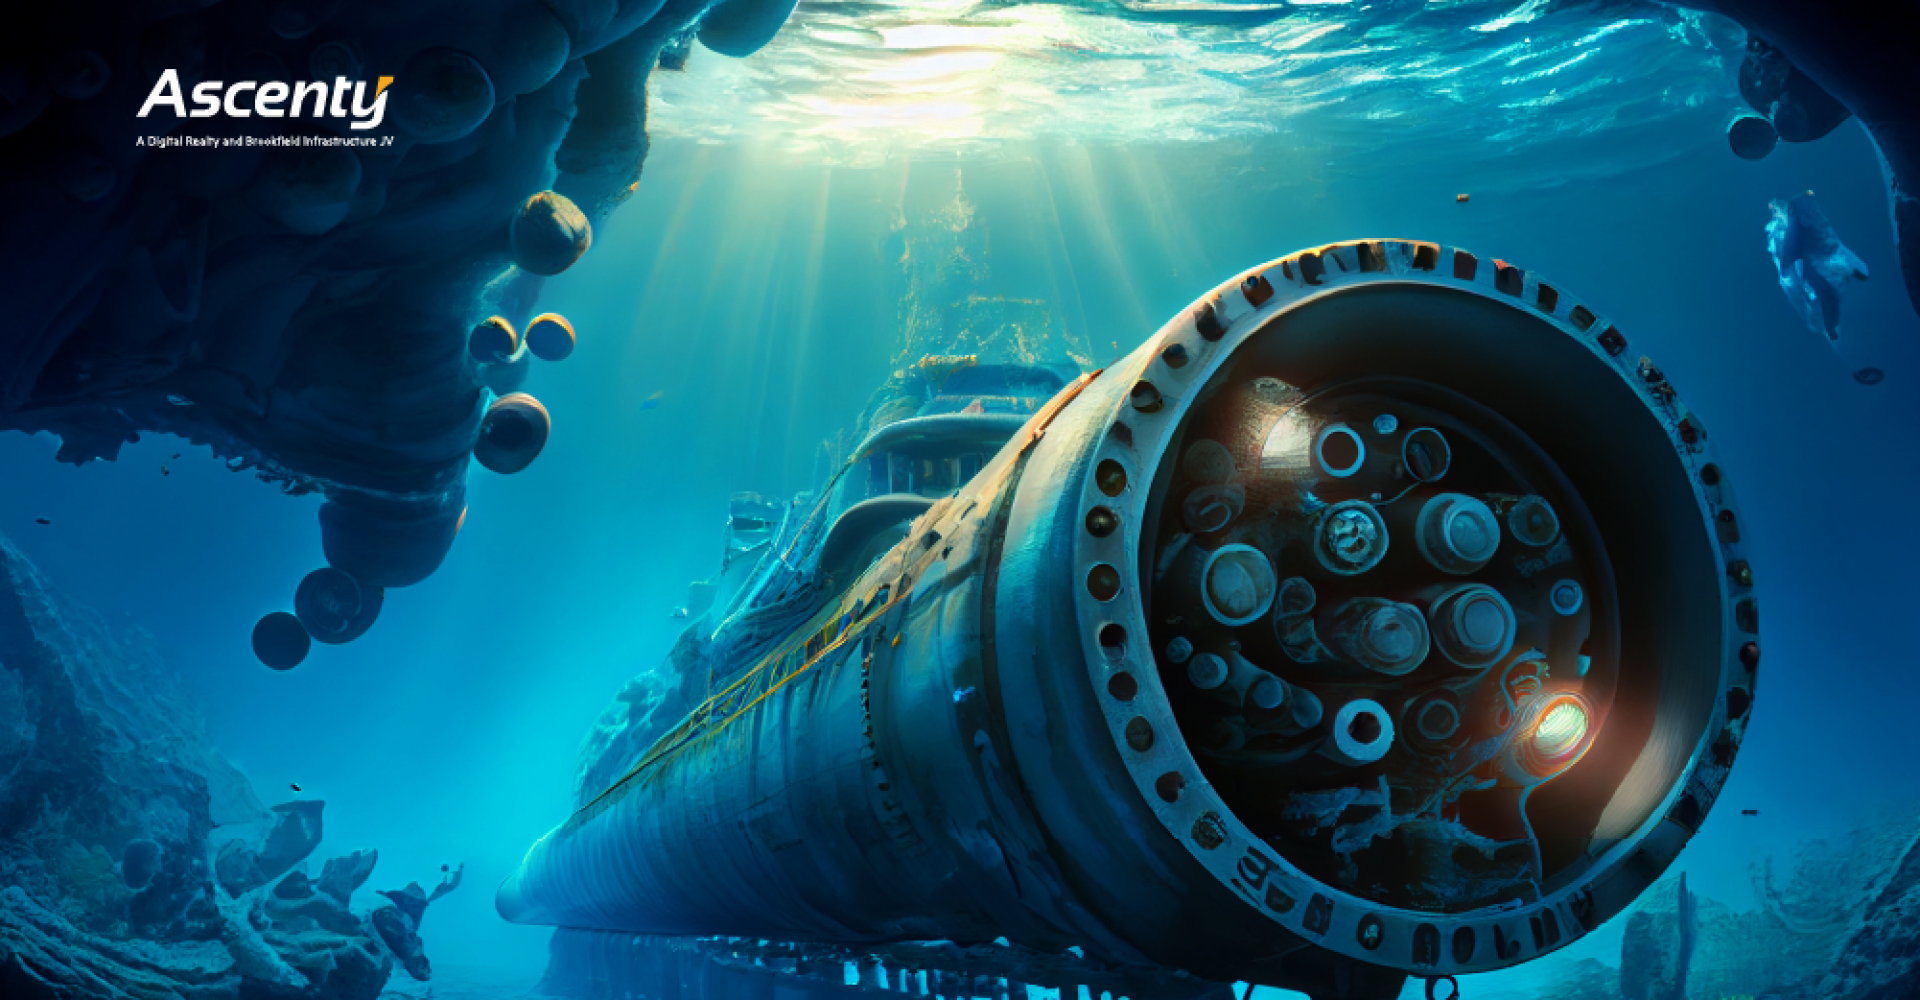 Mundo hiperconectado: o papel dos cabos submarinos nessa nova era